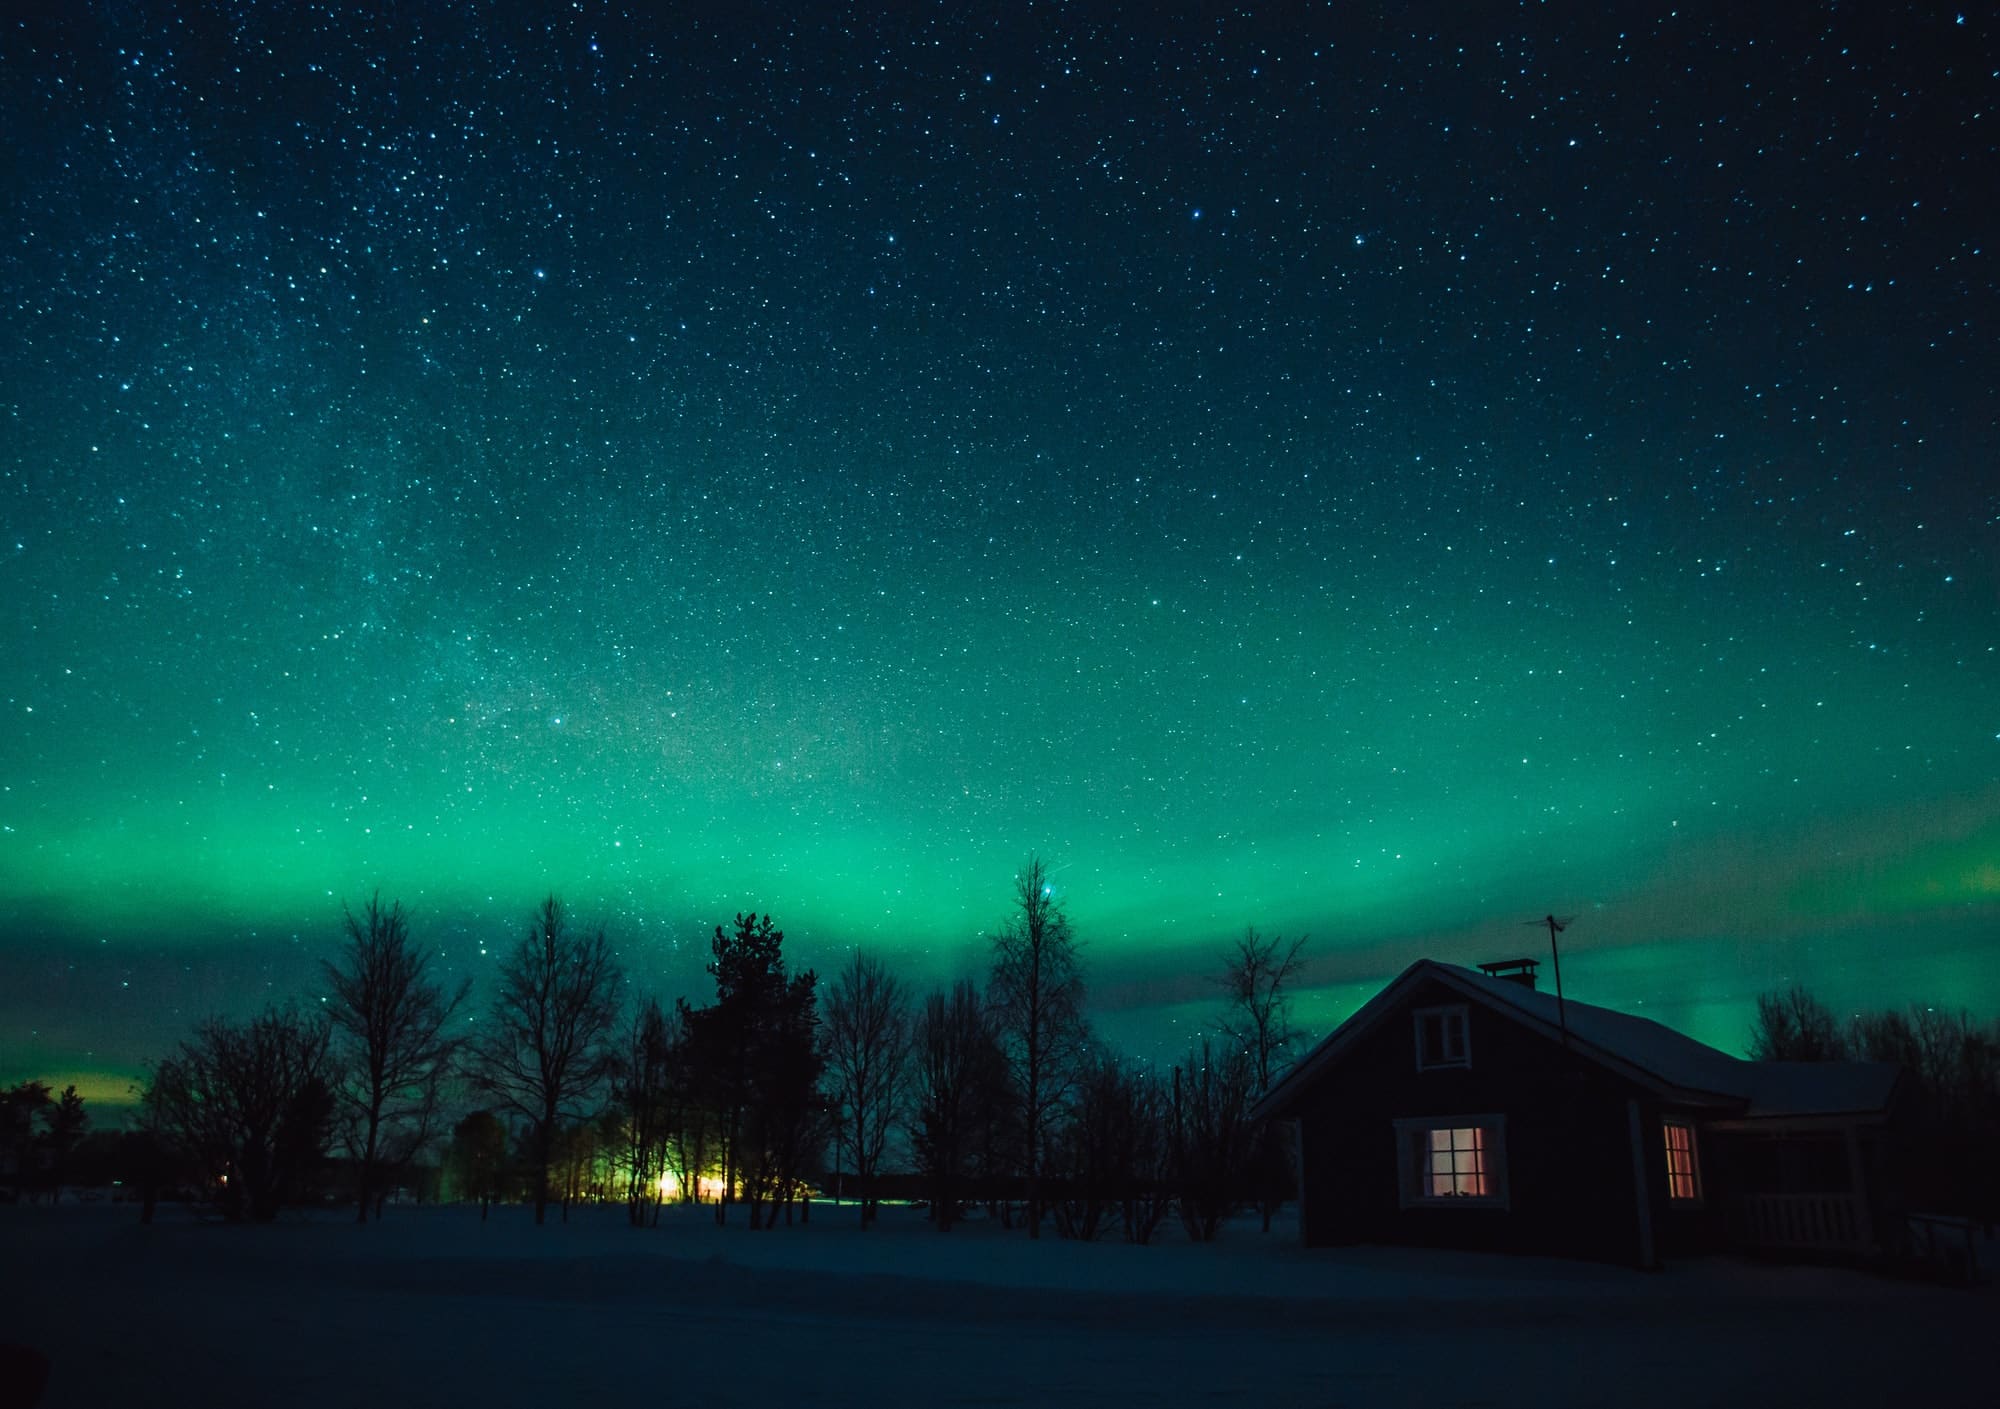 Northern lights (Aurora Borealis) over cottage in Lapland village. Finland